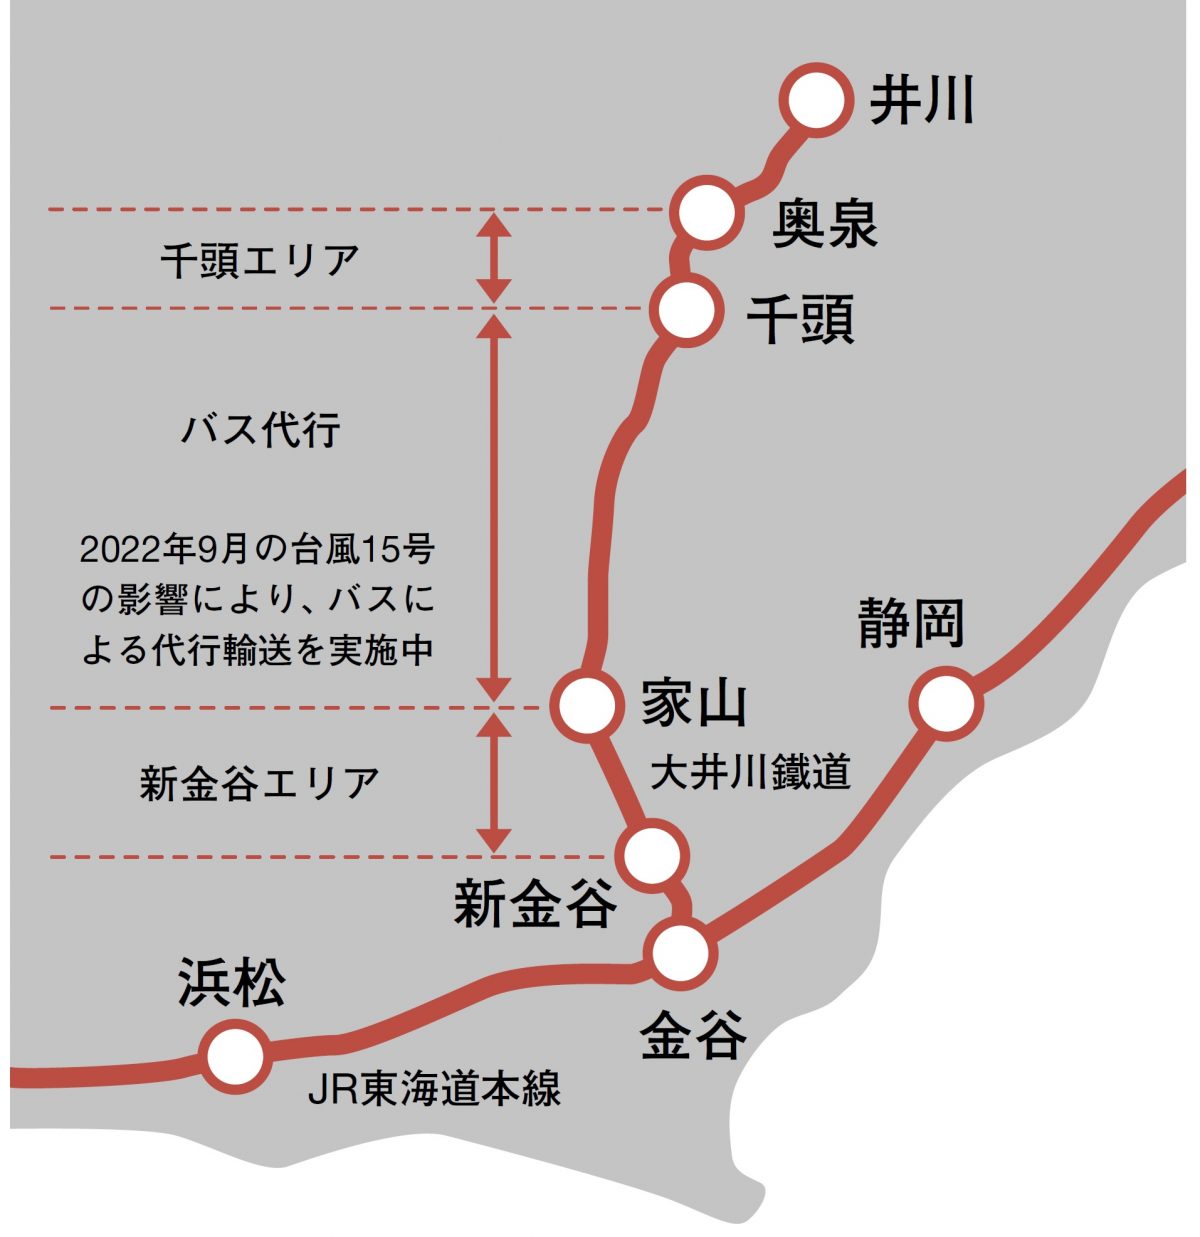 「きかんしゃトーマス」の公式イベントは大井川鐵道の一部路線を使って開催